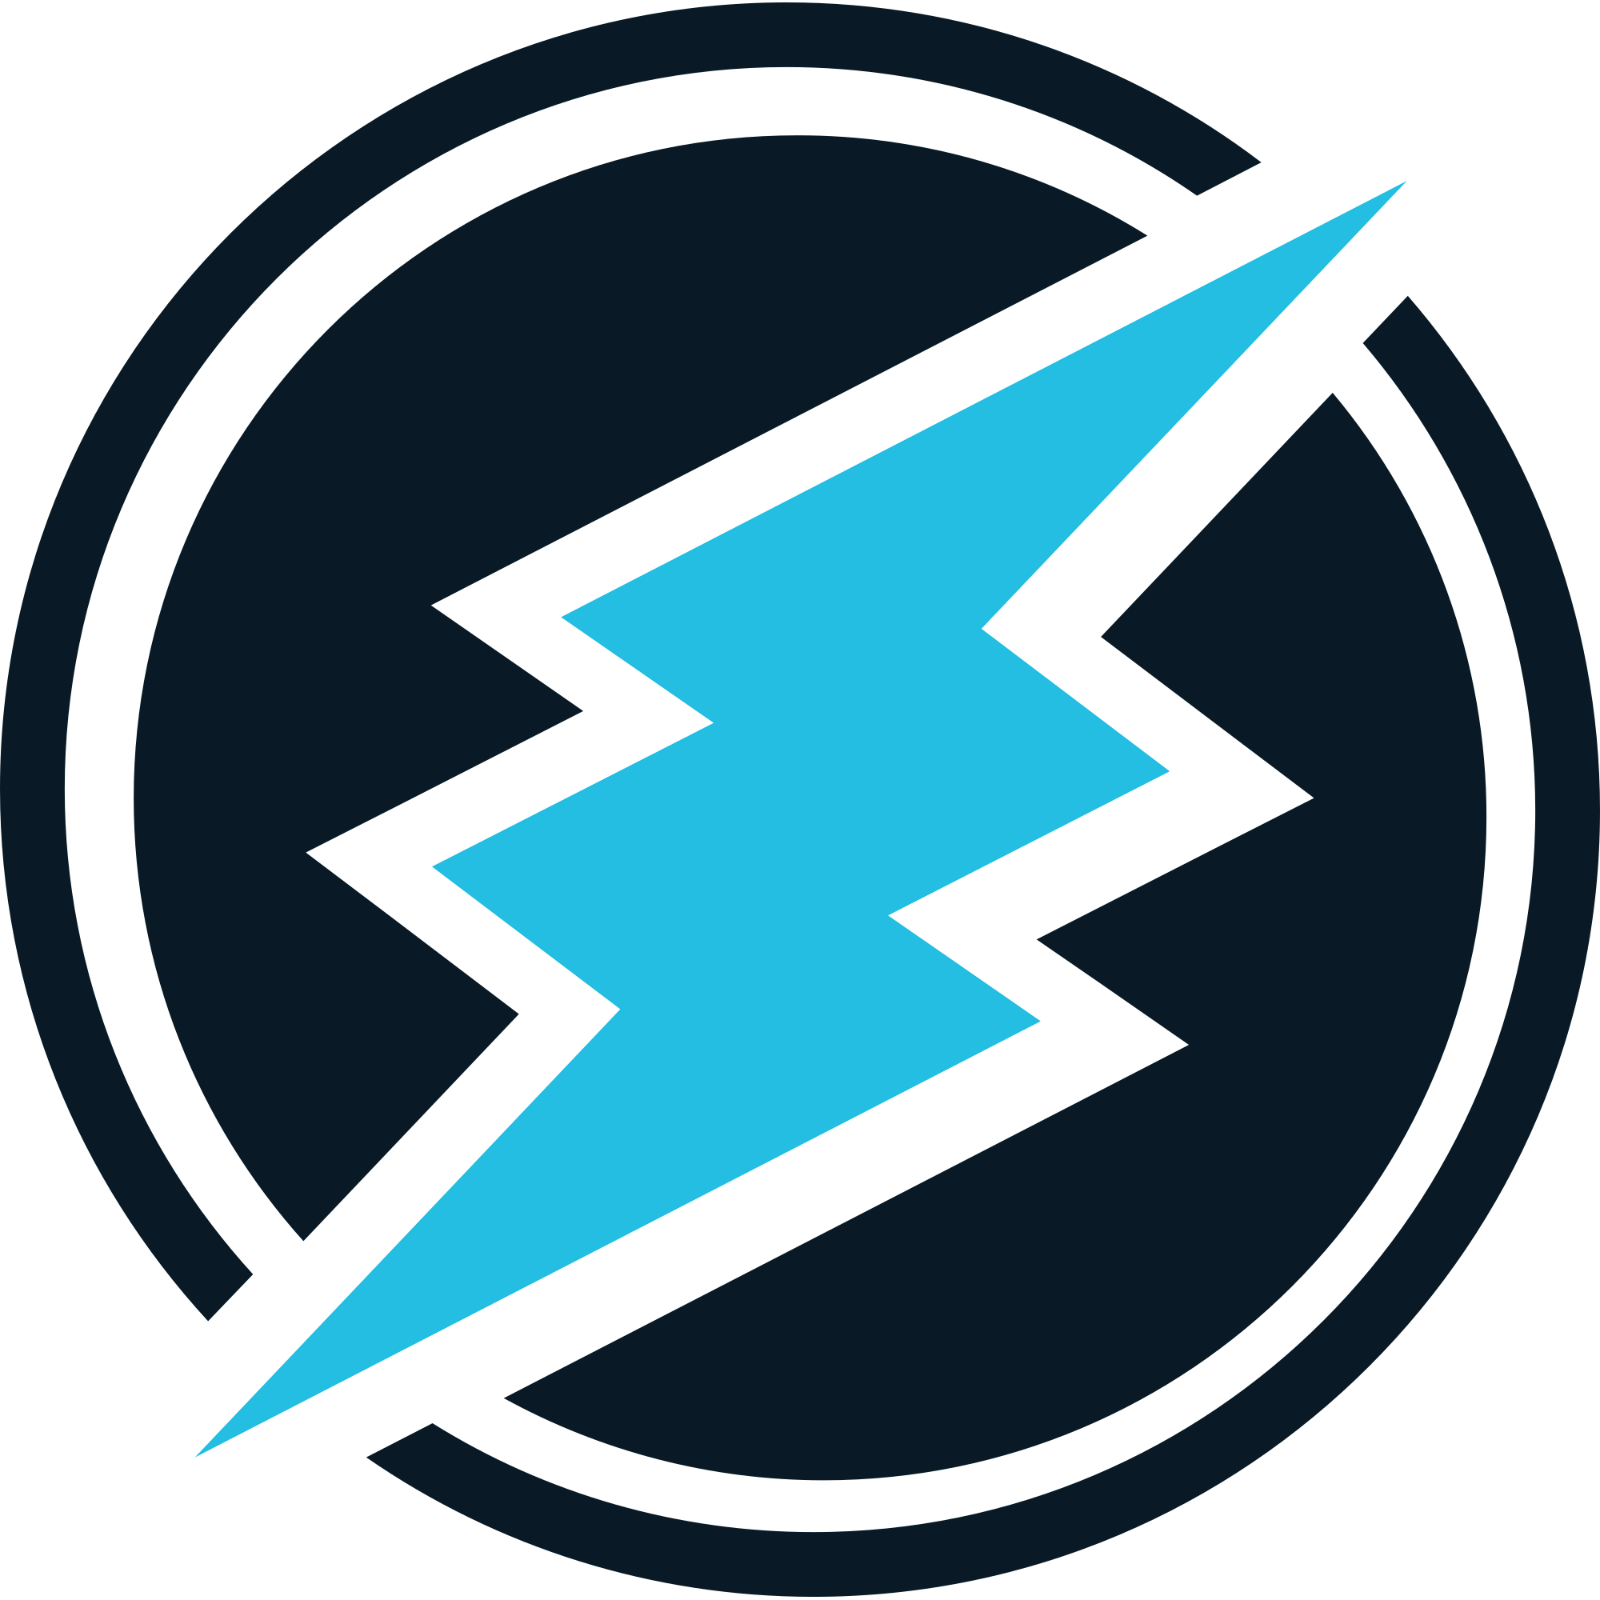 Electroneum Logo